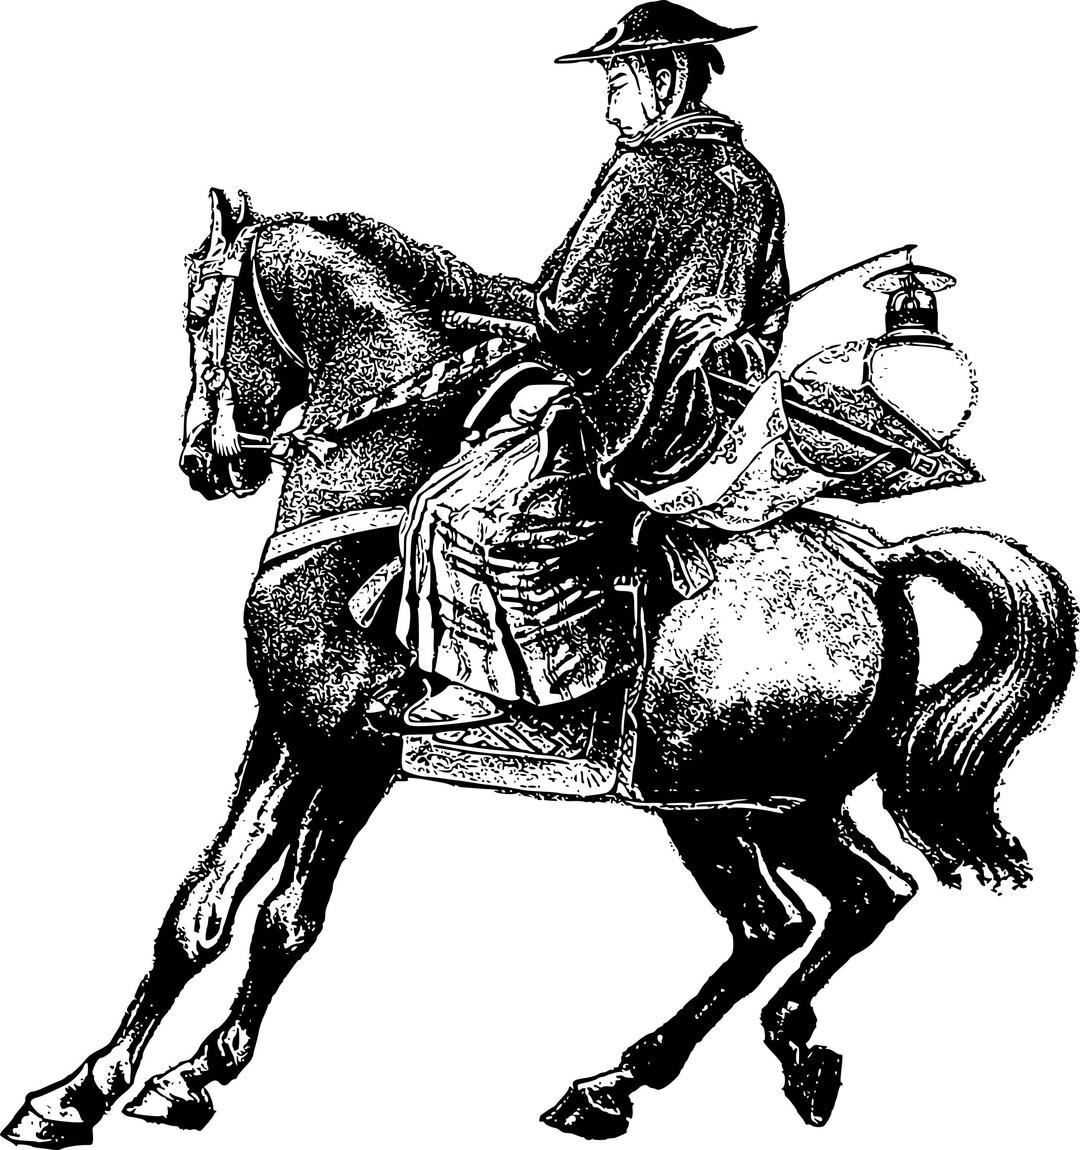 Samurai Man on a Horse png transparent